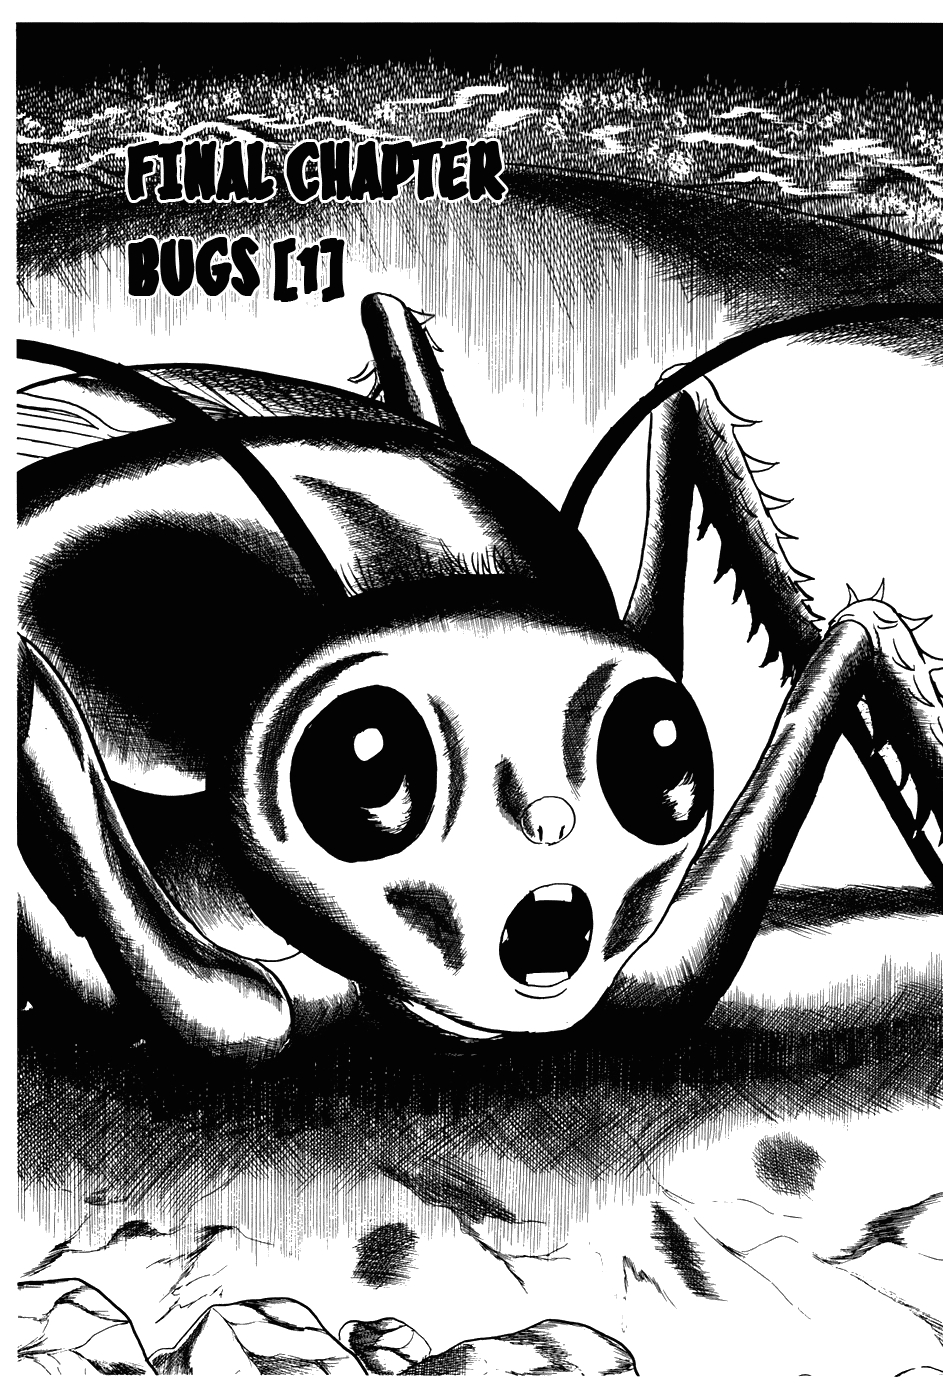 Fourteen Vol. 13 Ch. 250 Bugs (1)